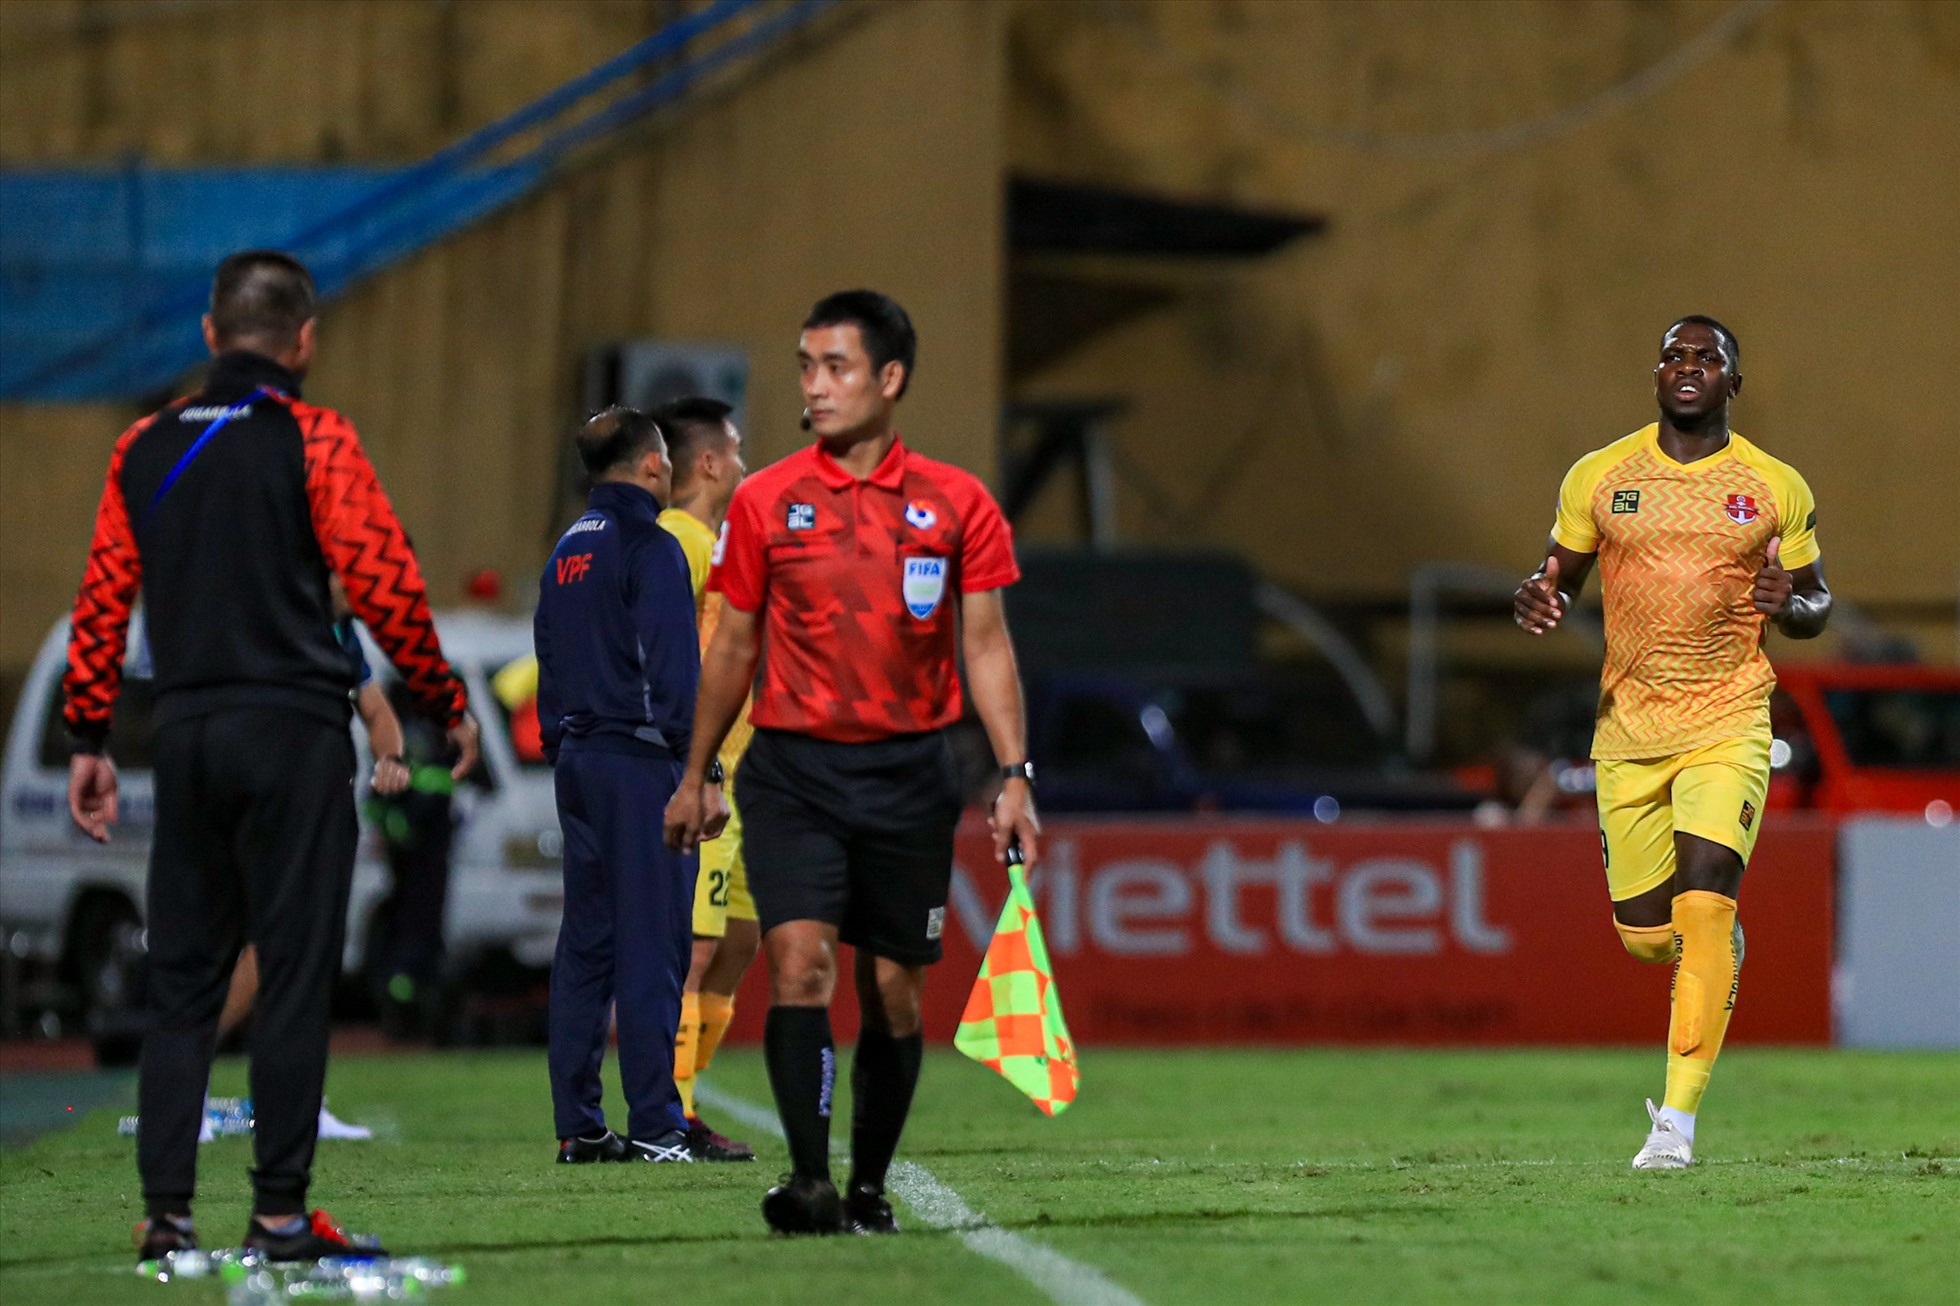 Cầu thủ người Jamaica chạy lại phía huấn luyện viên Chu Đình Nghiêm ăn mừng. Kết quả 1-1 cũng là tỉ số cuối cùng của trận đấu. Đây là kết quả bất lợi cho cả hai đội bóng trong cuộc đua tới ngôi vô địch Night Wolf V.League 2022.